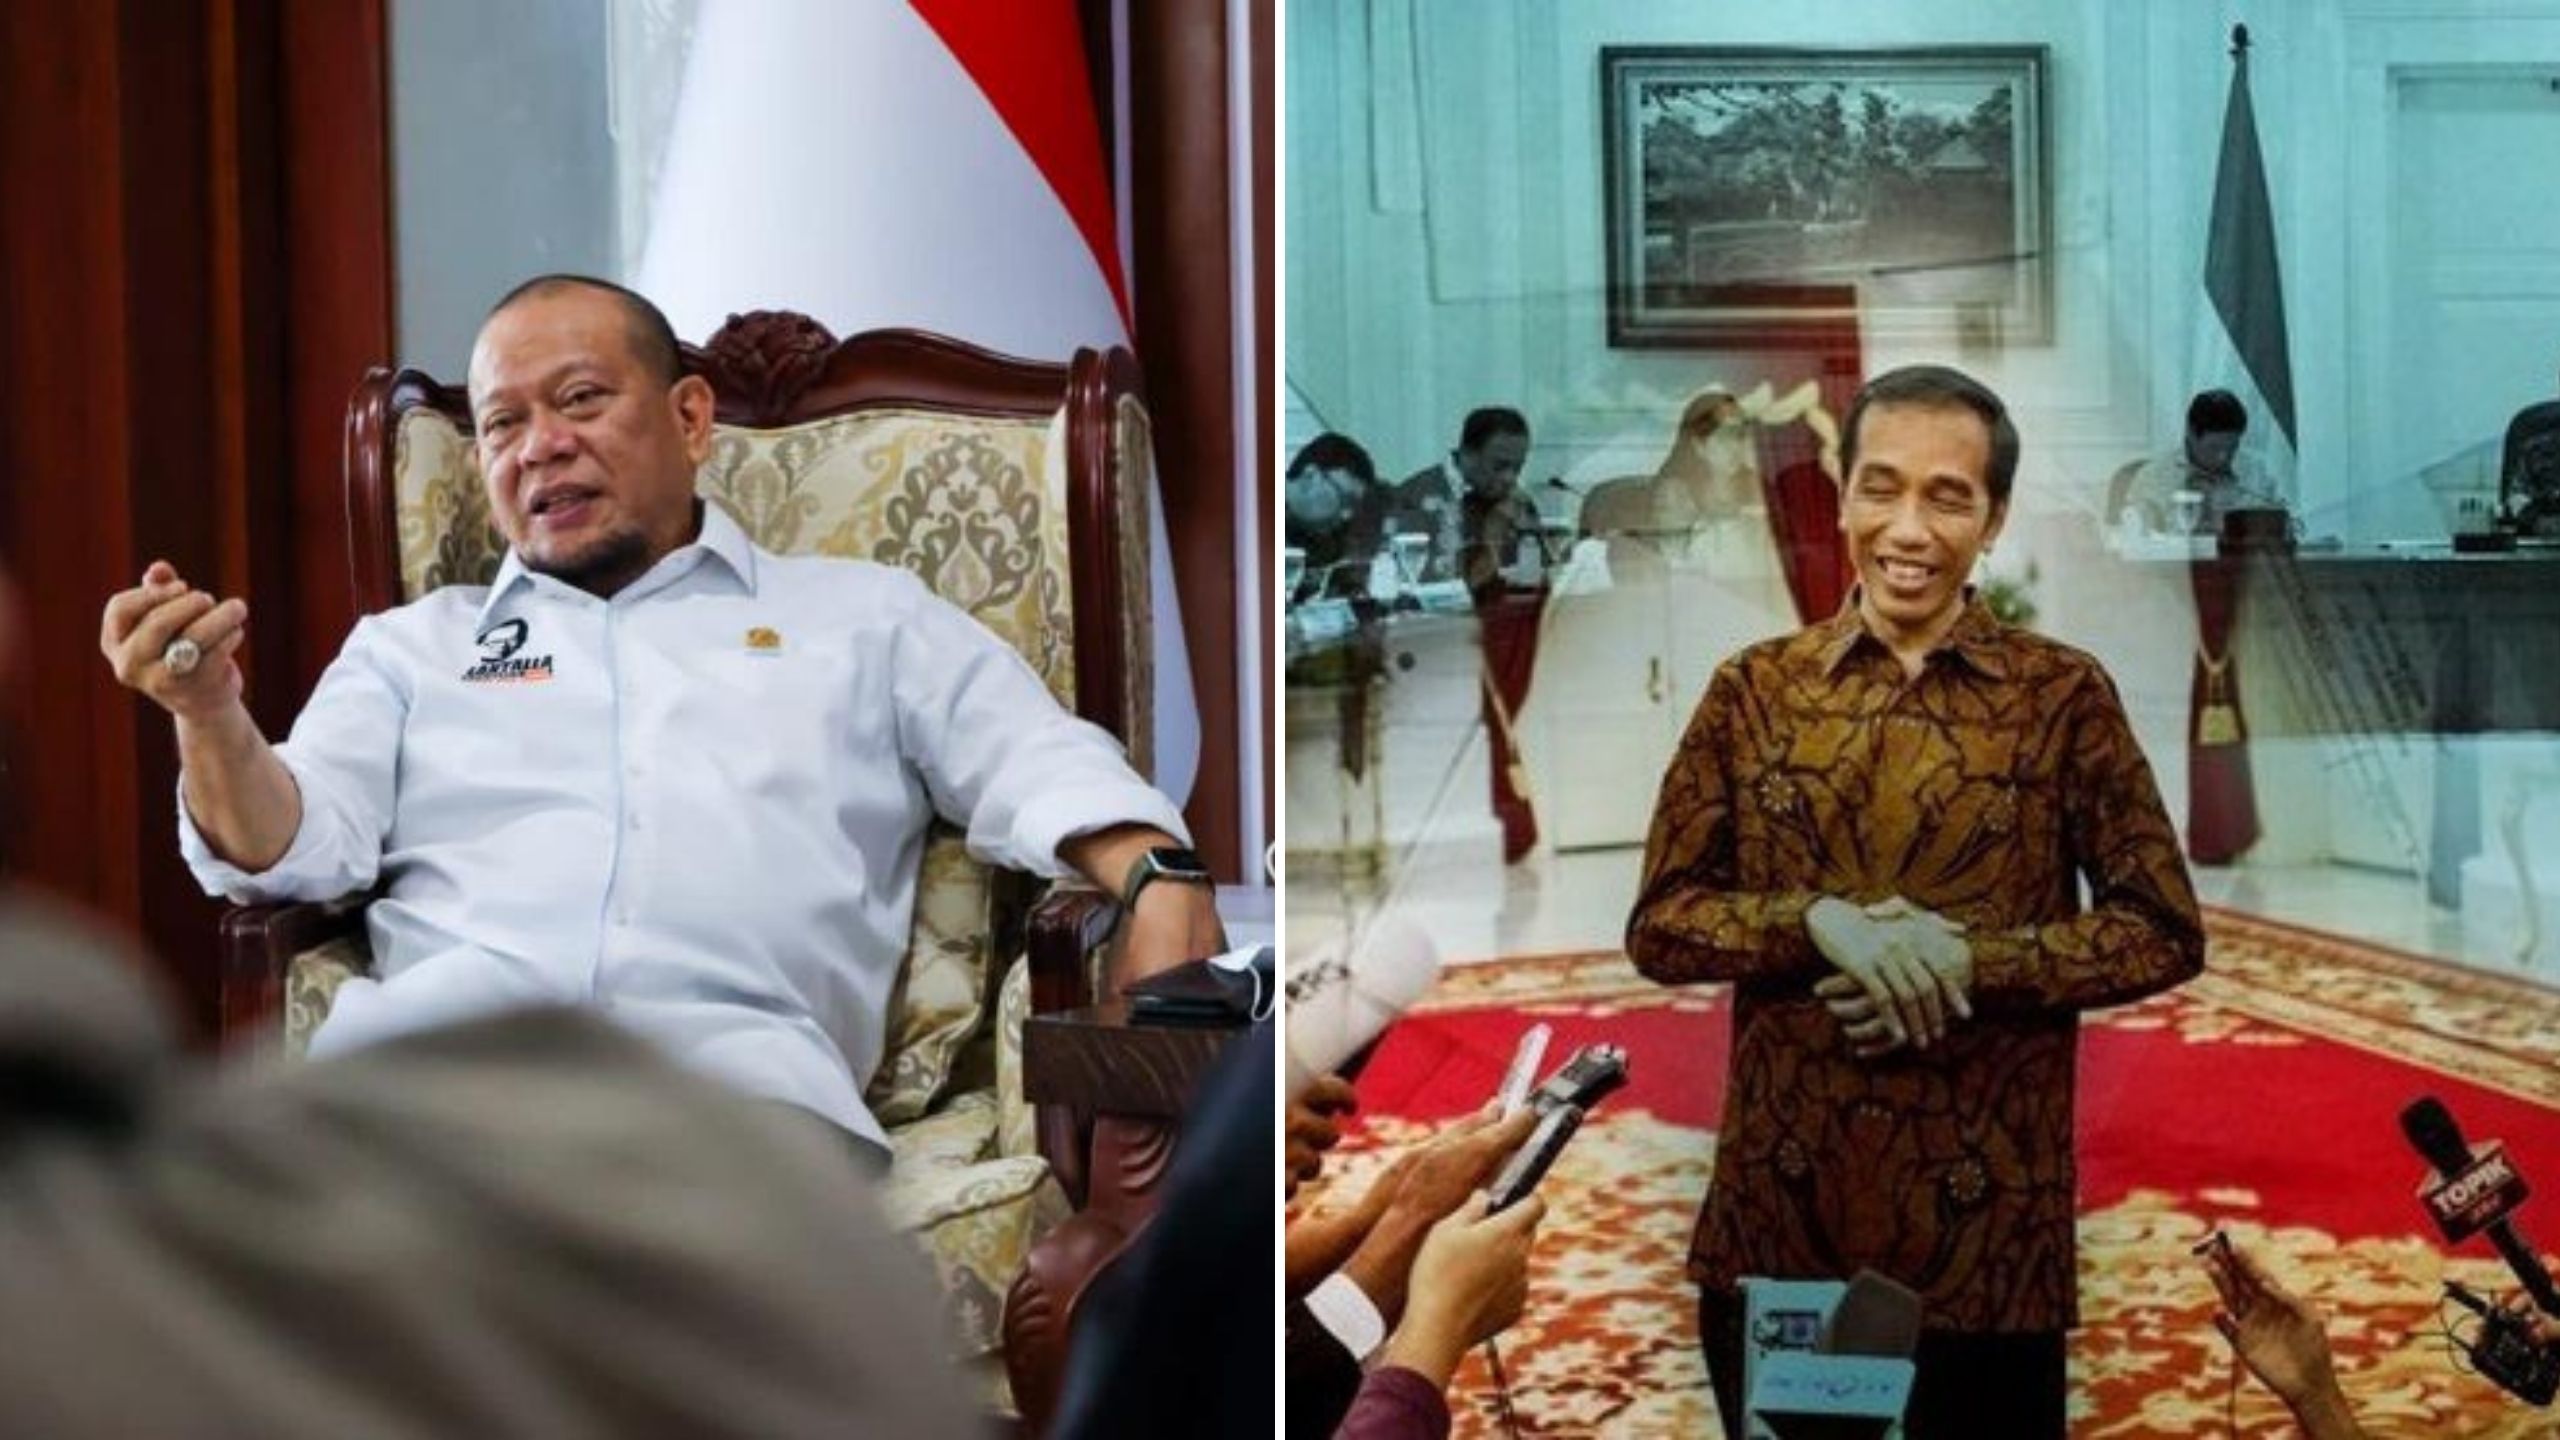 Persilahkan Jokowi Dimakzulkan, Ketua DPD LaNyalla: Saya Tak Bisa Halangi